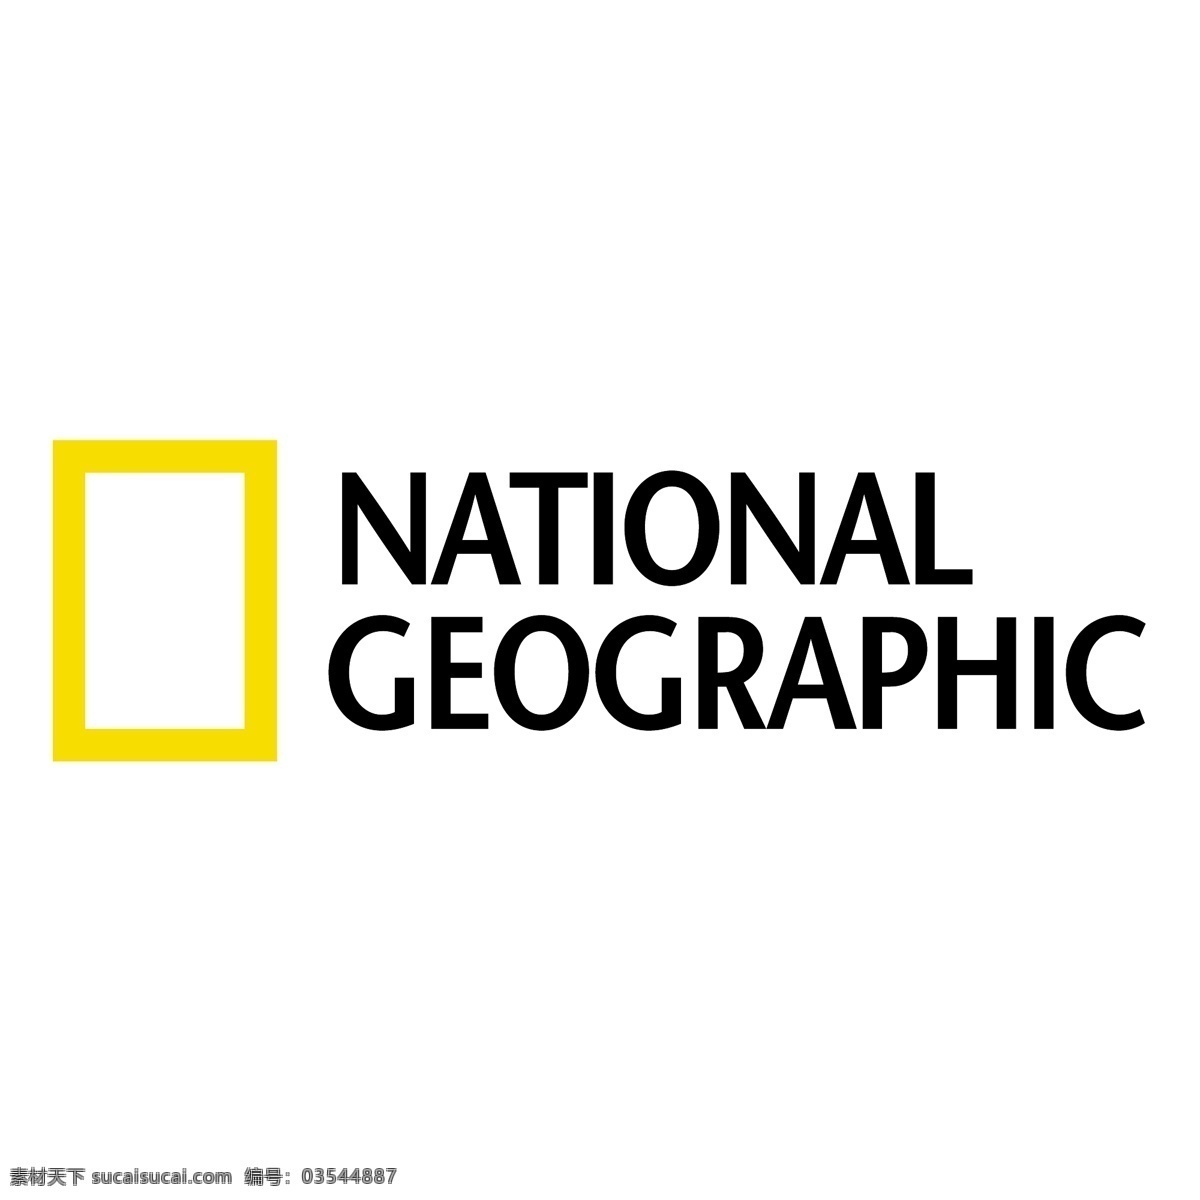 地理 国家 美国 国家地理 杂志 矢量 标志 地图 自由 向量 矢量图 建筑家居